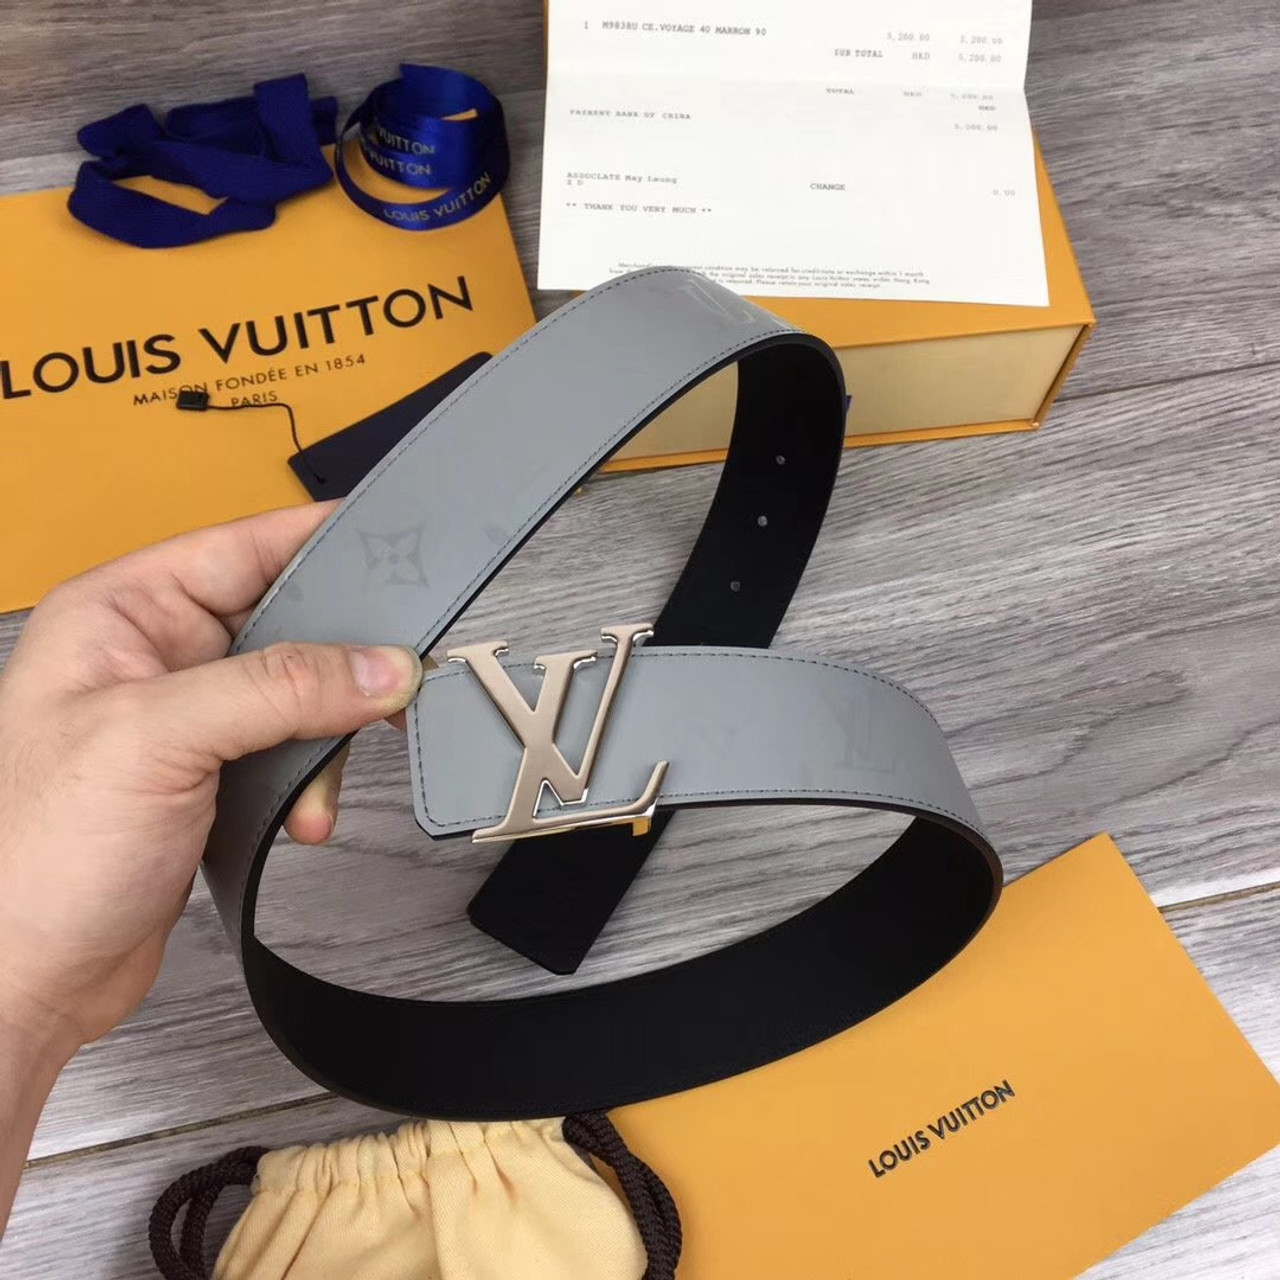 NIB Louis Vuitton Prism Belt, Virgil Abloh S/S ‘19